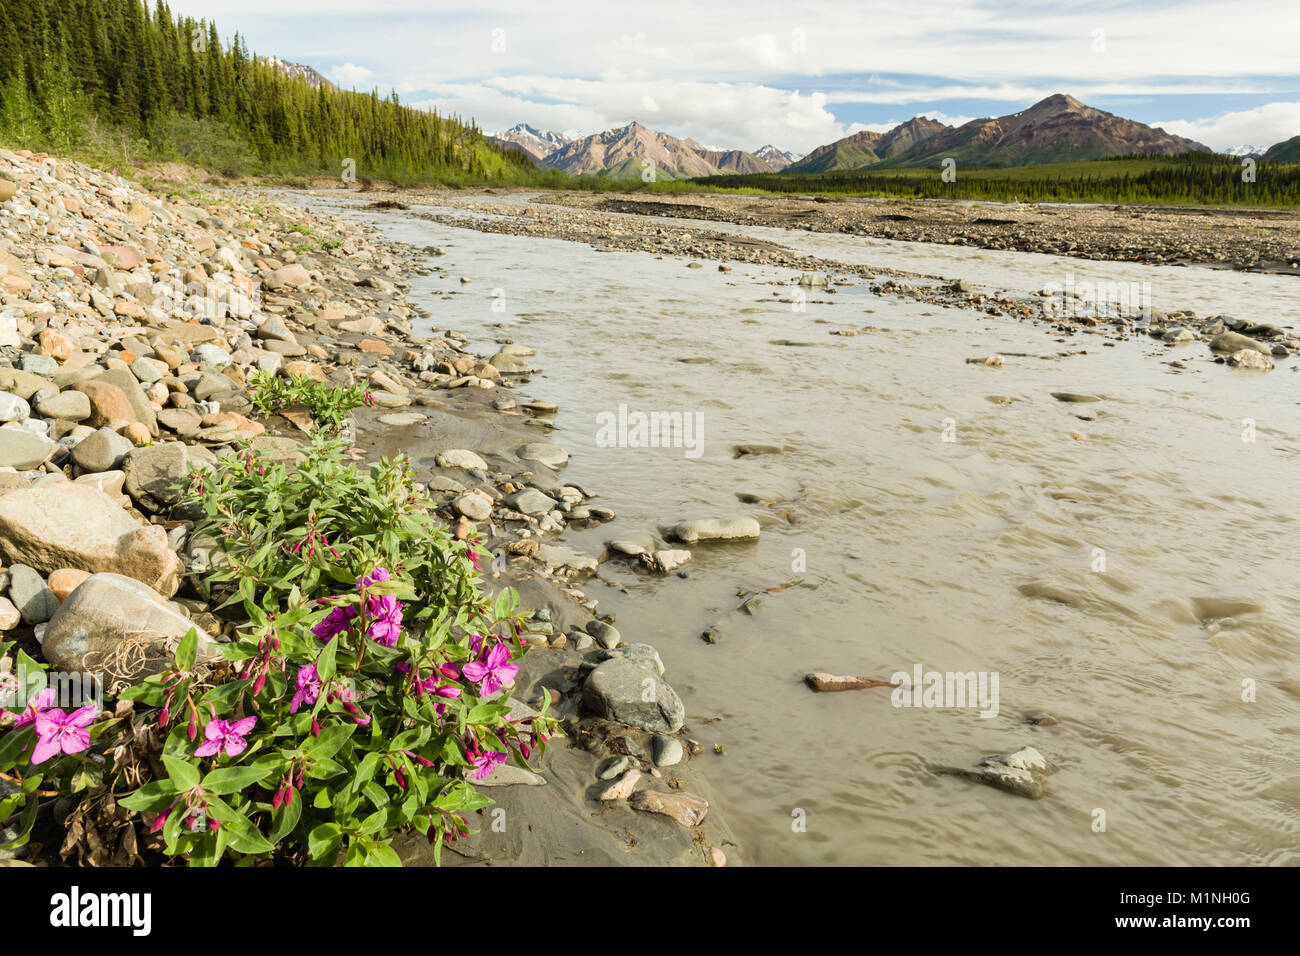 La bellezza del fiume o Dwarf Fireweed fiori selvaggi crescono lungo le sponde rocciose del Fiume Teklanika nel Parco Nazionale di Denali in Alaska. Foto Stock